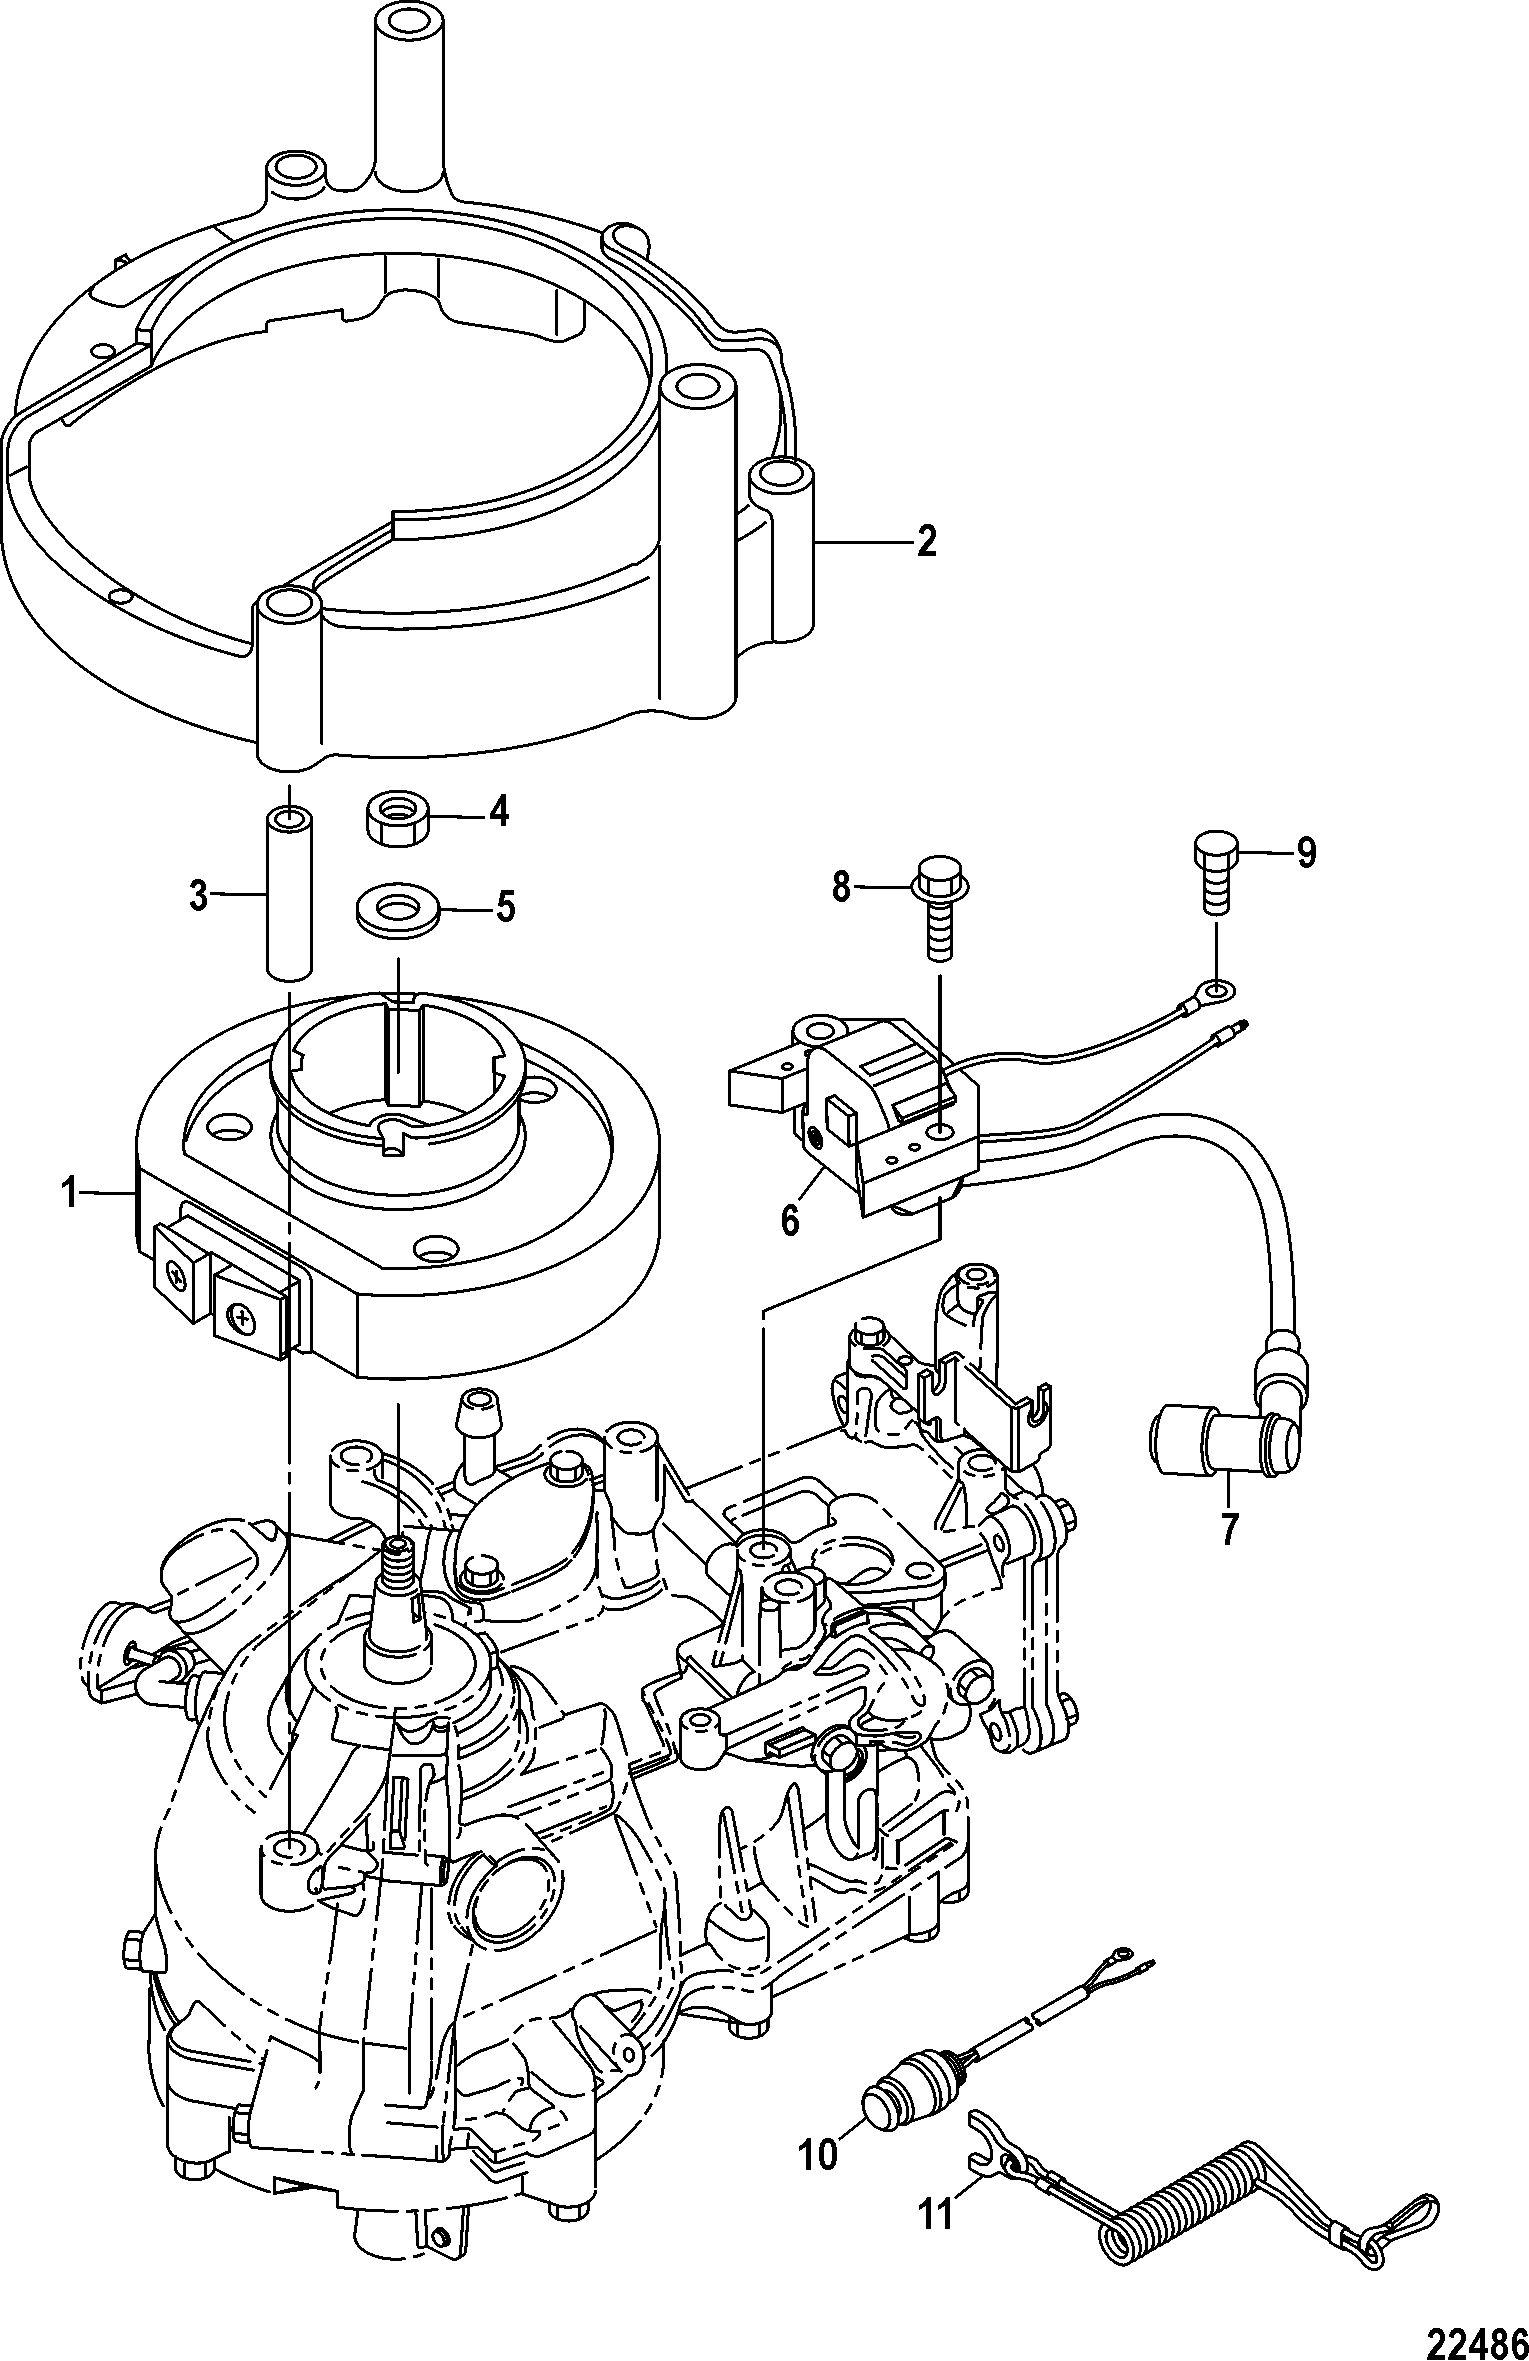 Flywheel Cup, Serial # 0R318095 and Below